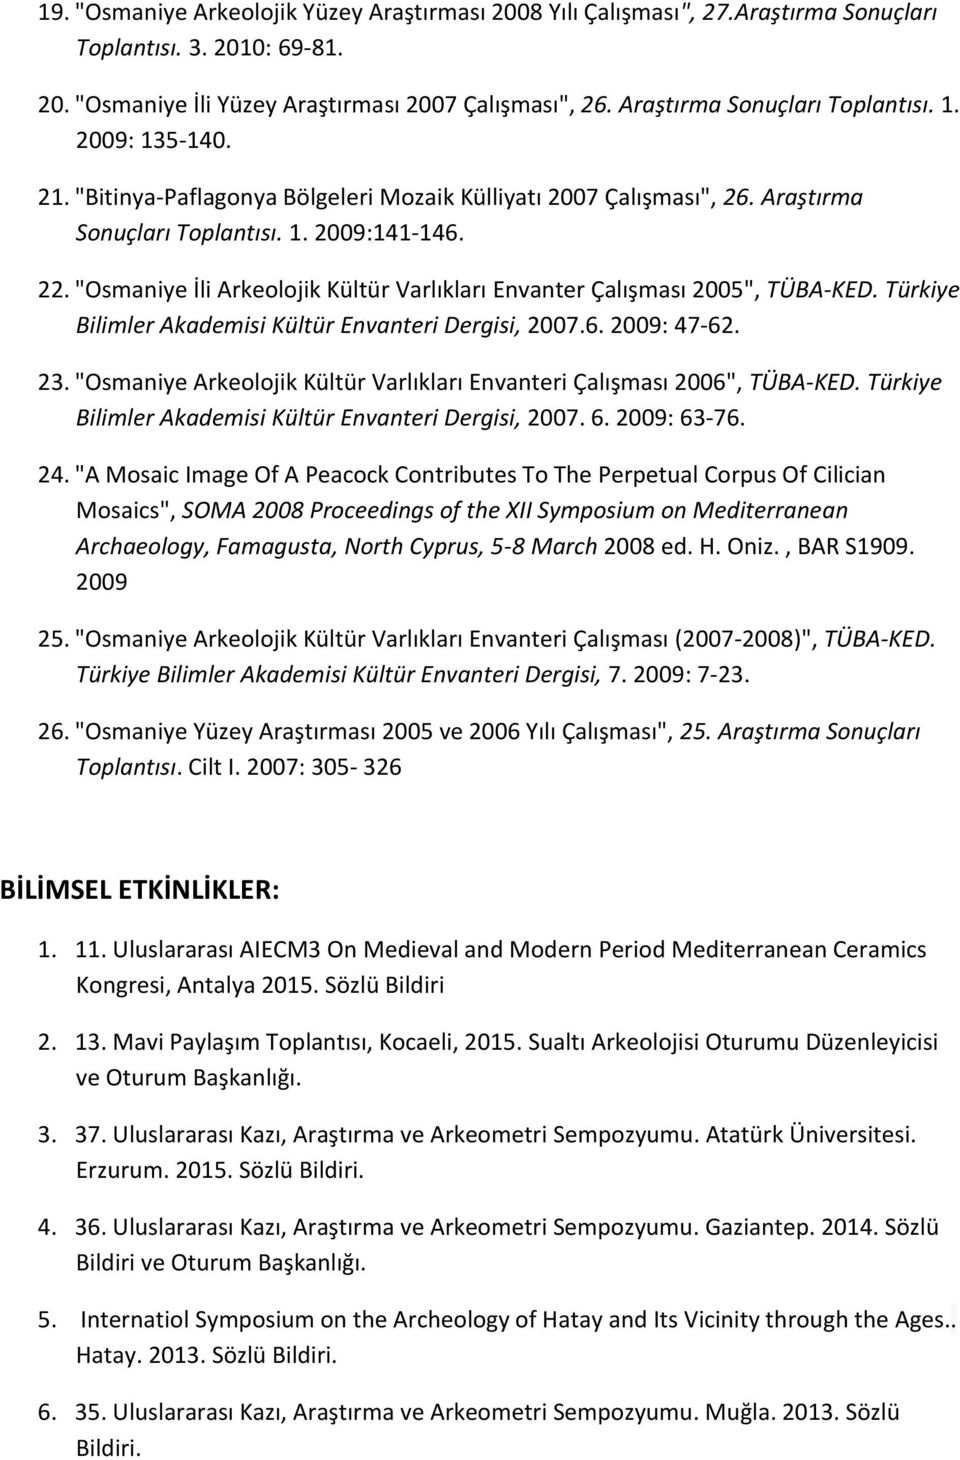 "Osmaniye İli Arkeolojik Kültür Varlıkları Envanter Çalışması 2005", TÜBA-KED. Türkiye Bilimler Akademisi Kültür Envanteri Dergisi, 2007.6. 2009: 47-62. 23.